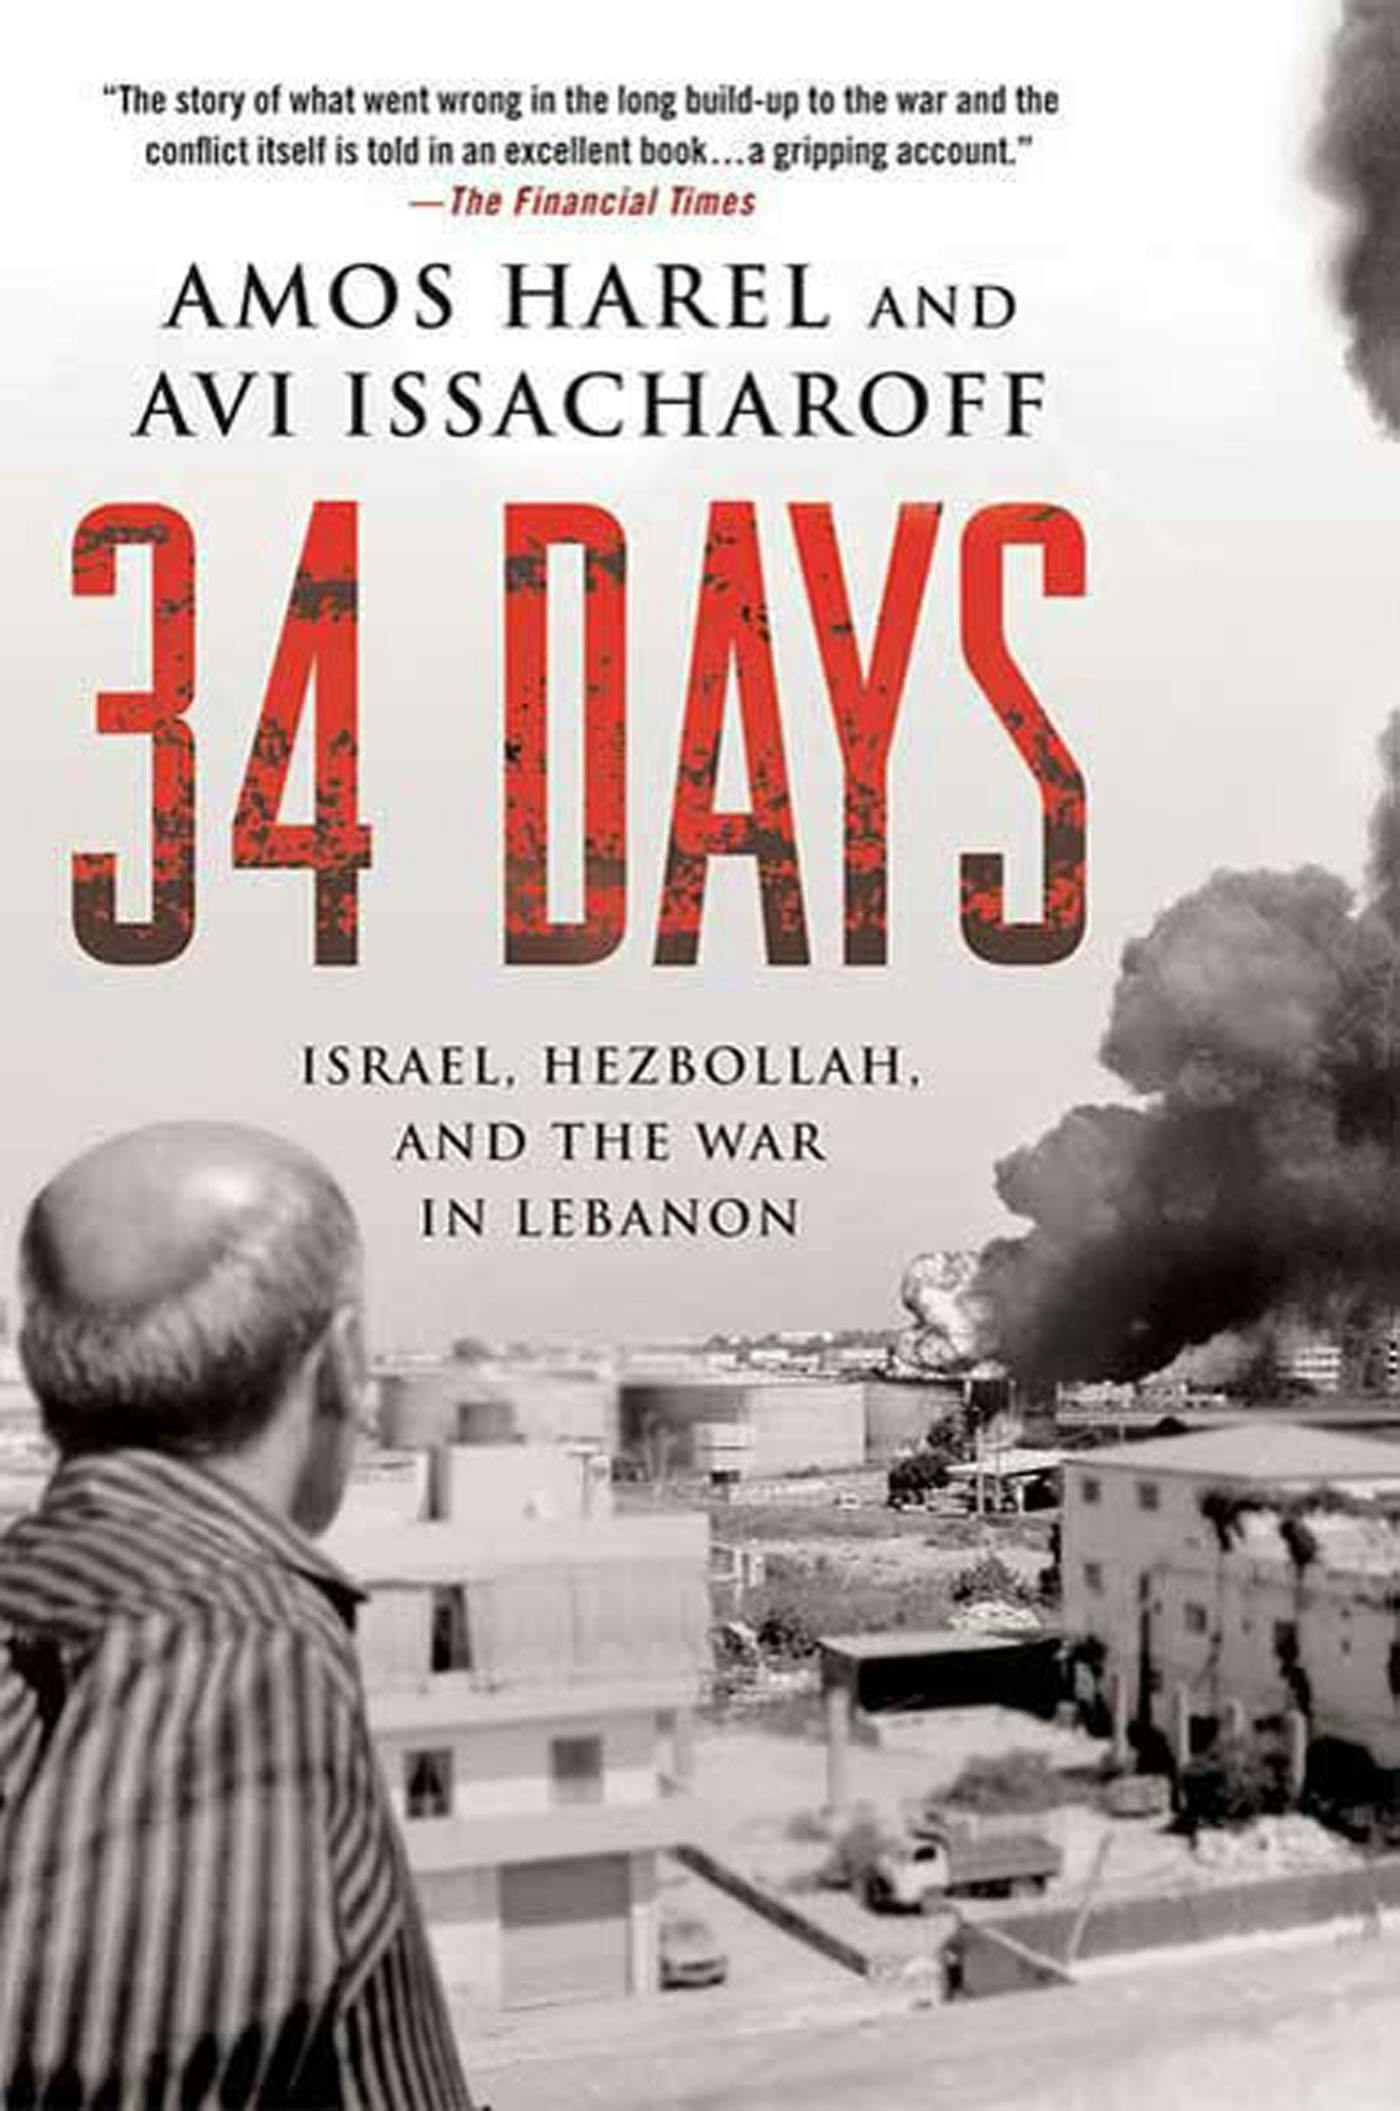 されます】 洋書 Paperback 34 Days: Israel Hezbollah and the War in  Lebanon：Glomarket することは